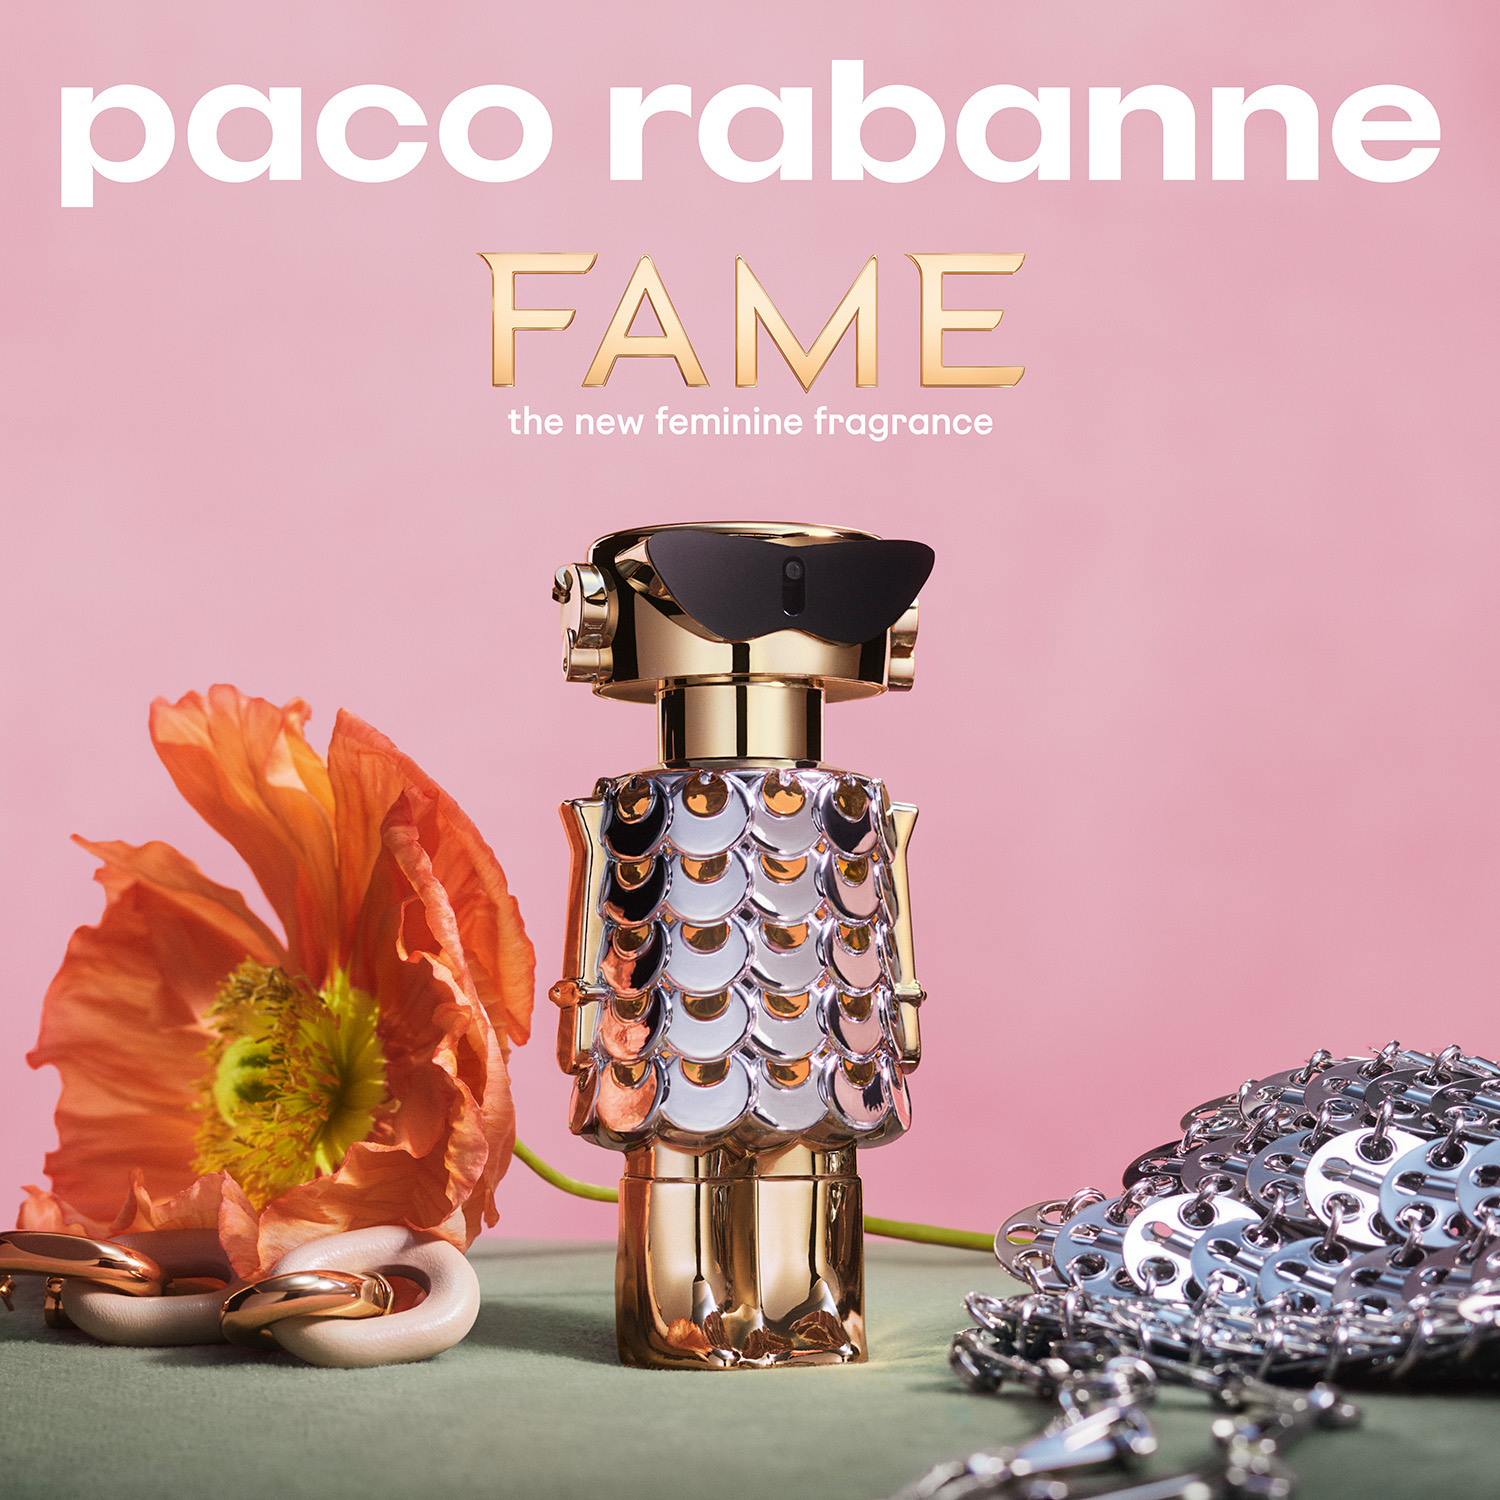 Paco Rabanne Fame Eau de Parfum 50ml